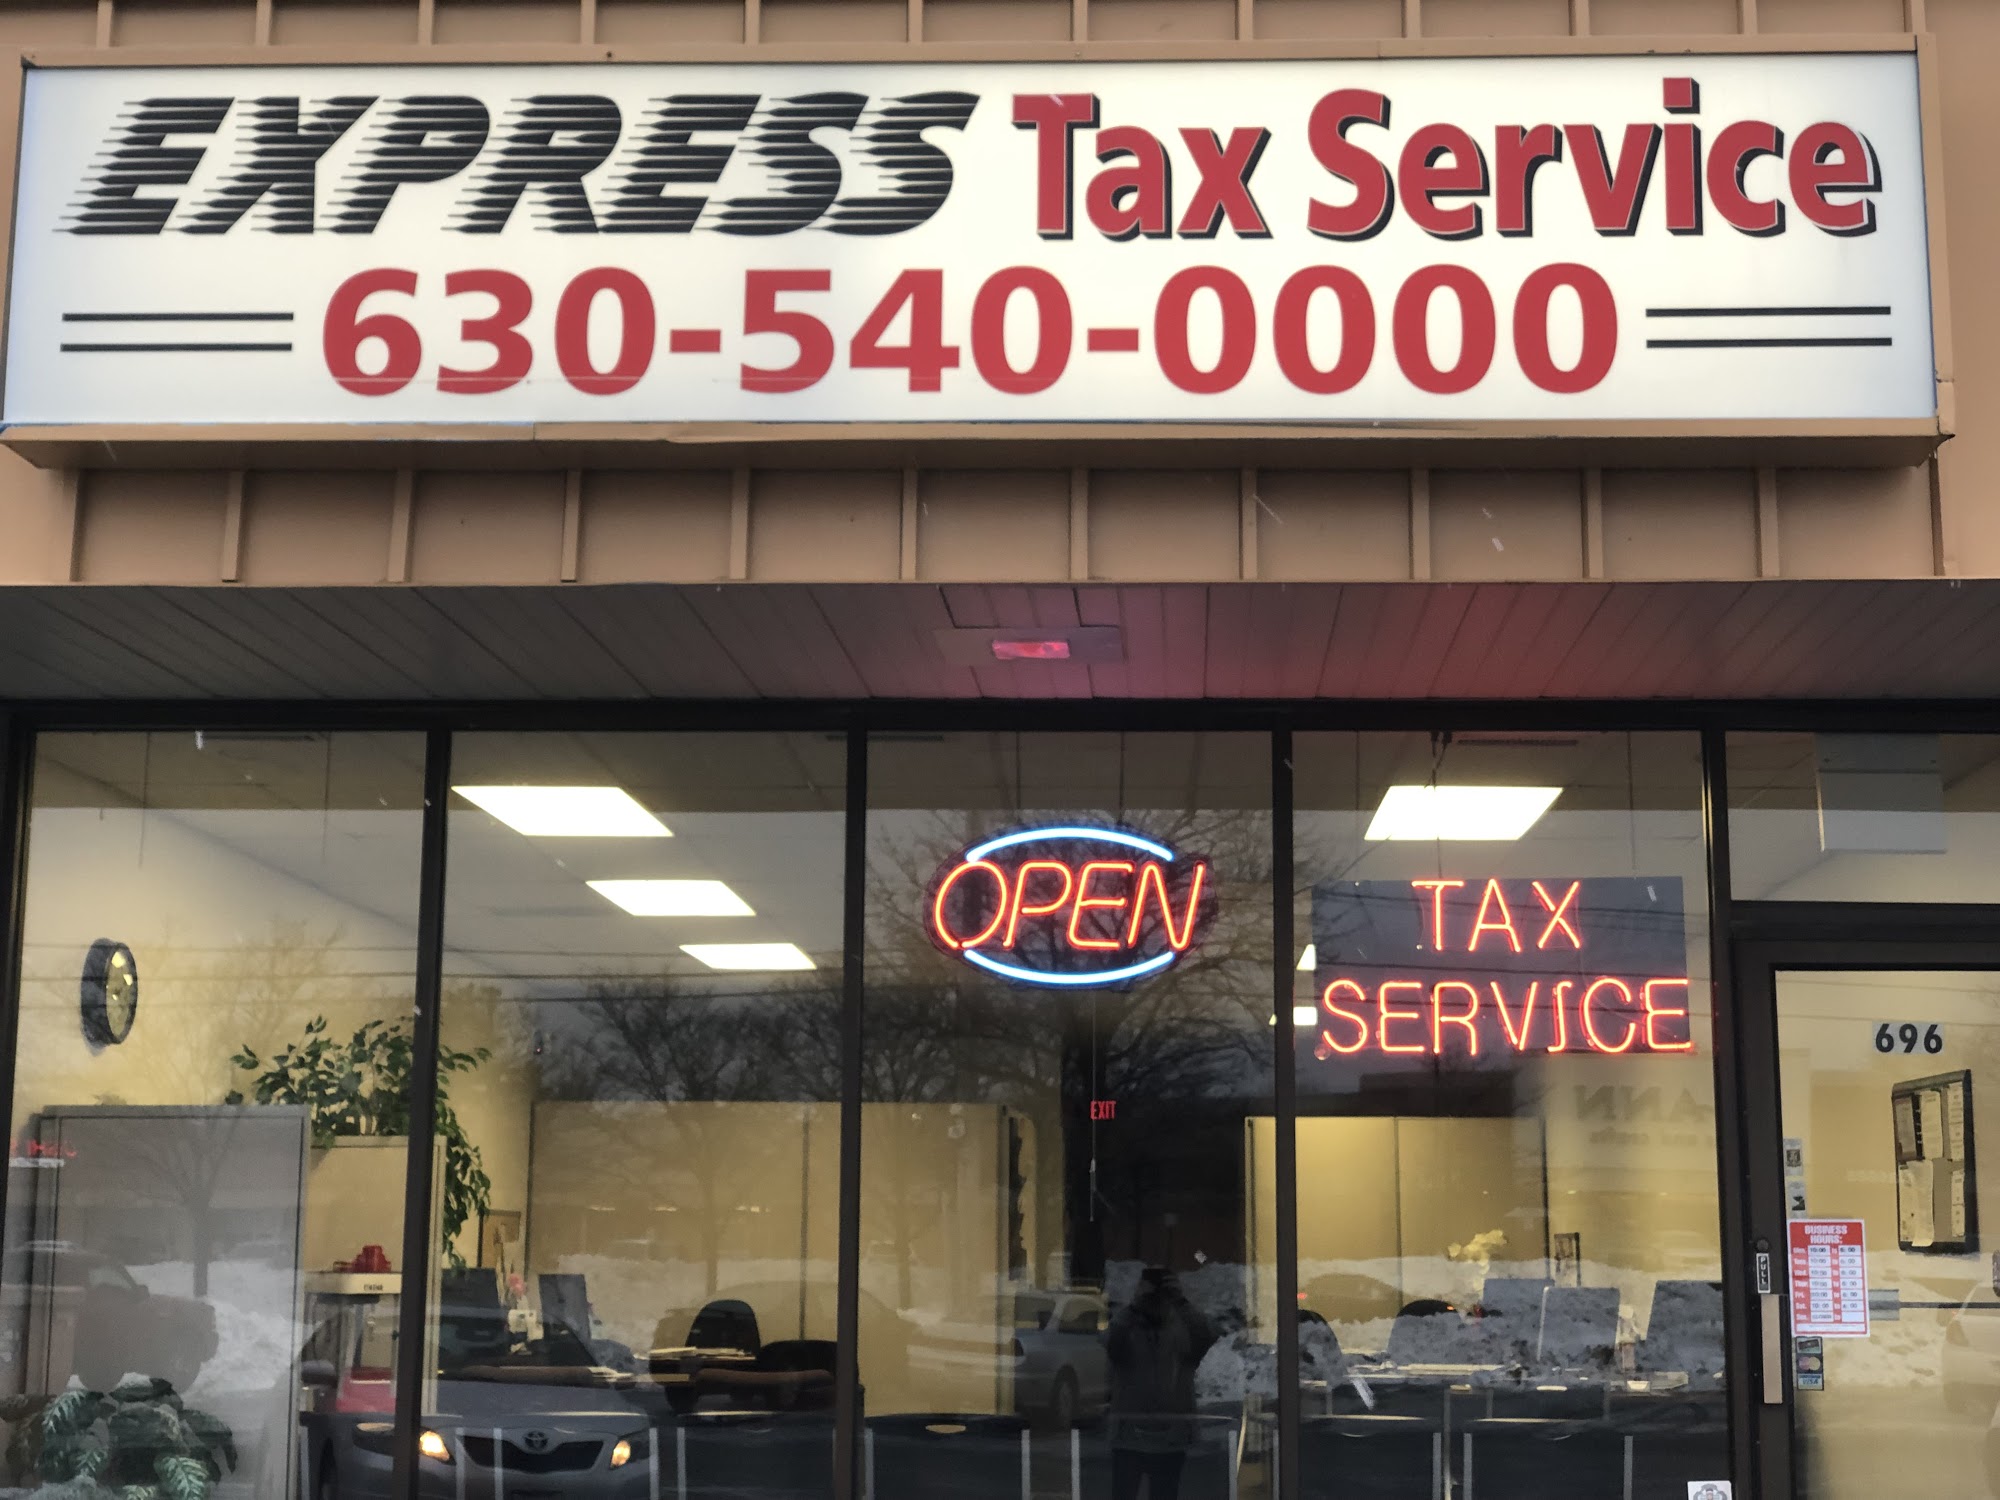 Express Tax Service